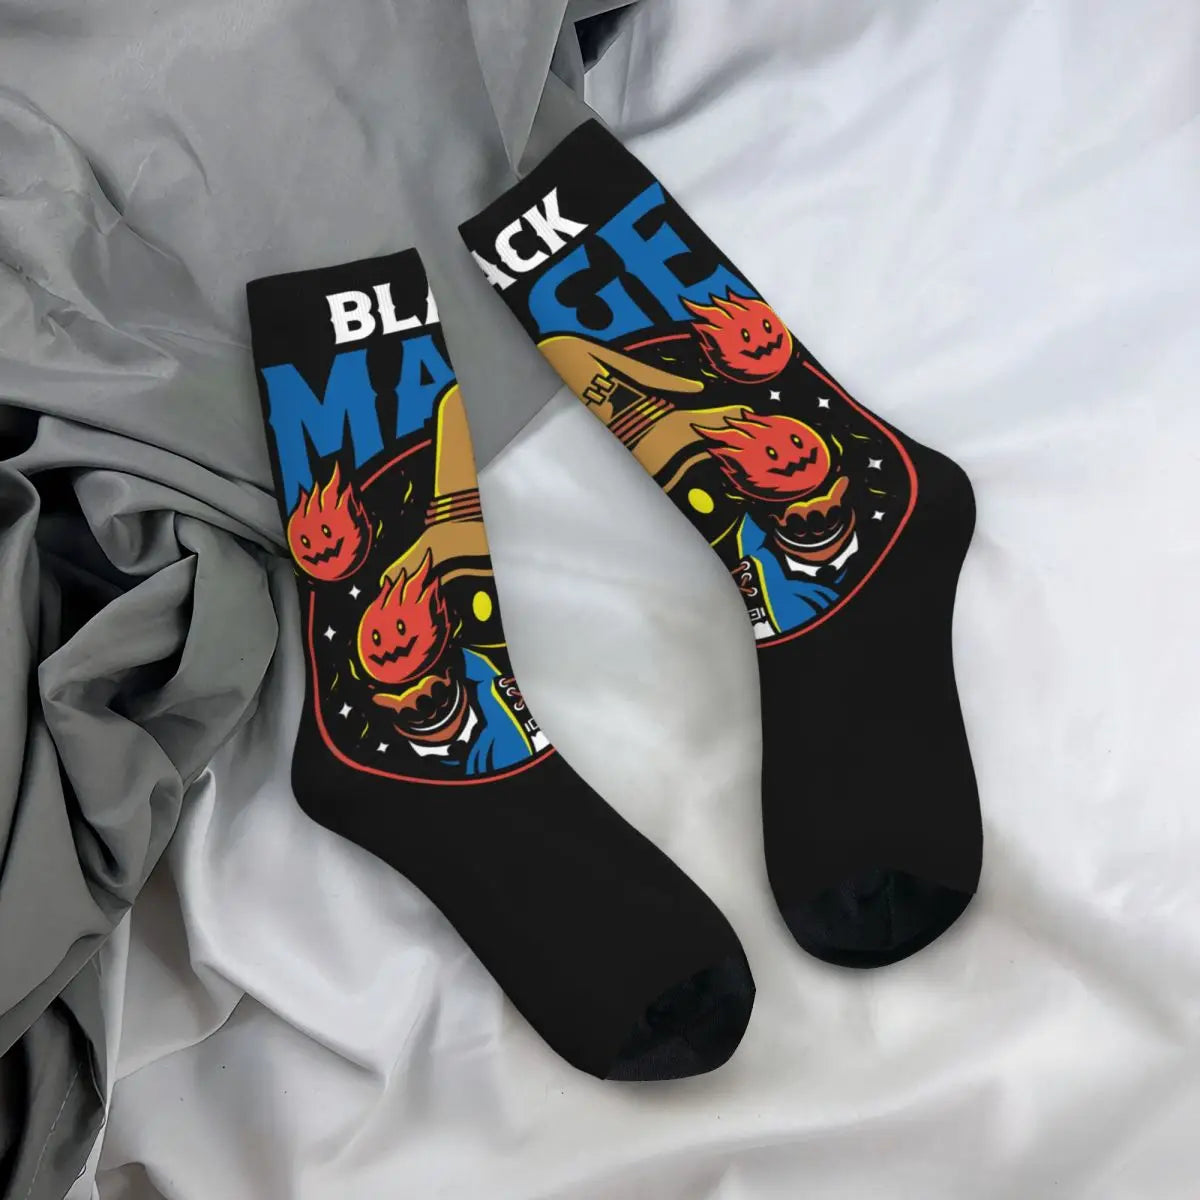 Chaussettes drôles pour hommes Vivi The Black Mage rétro Harajuku Final Fantasy XIV jeu Hip Hop nouveauté décontracté équipage chaussette cadeau imprimé